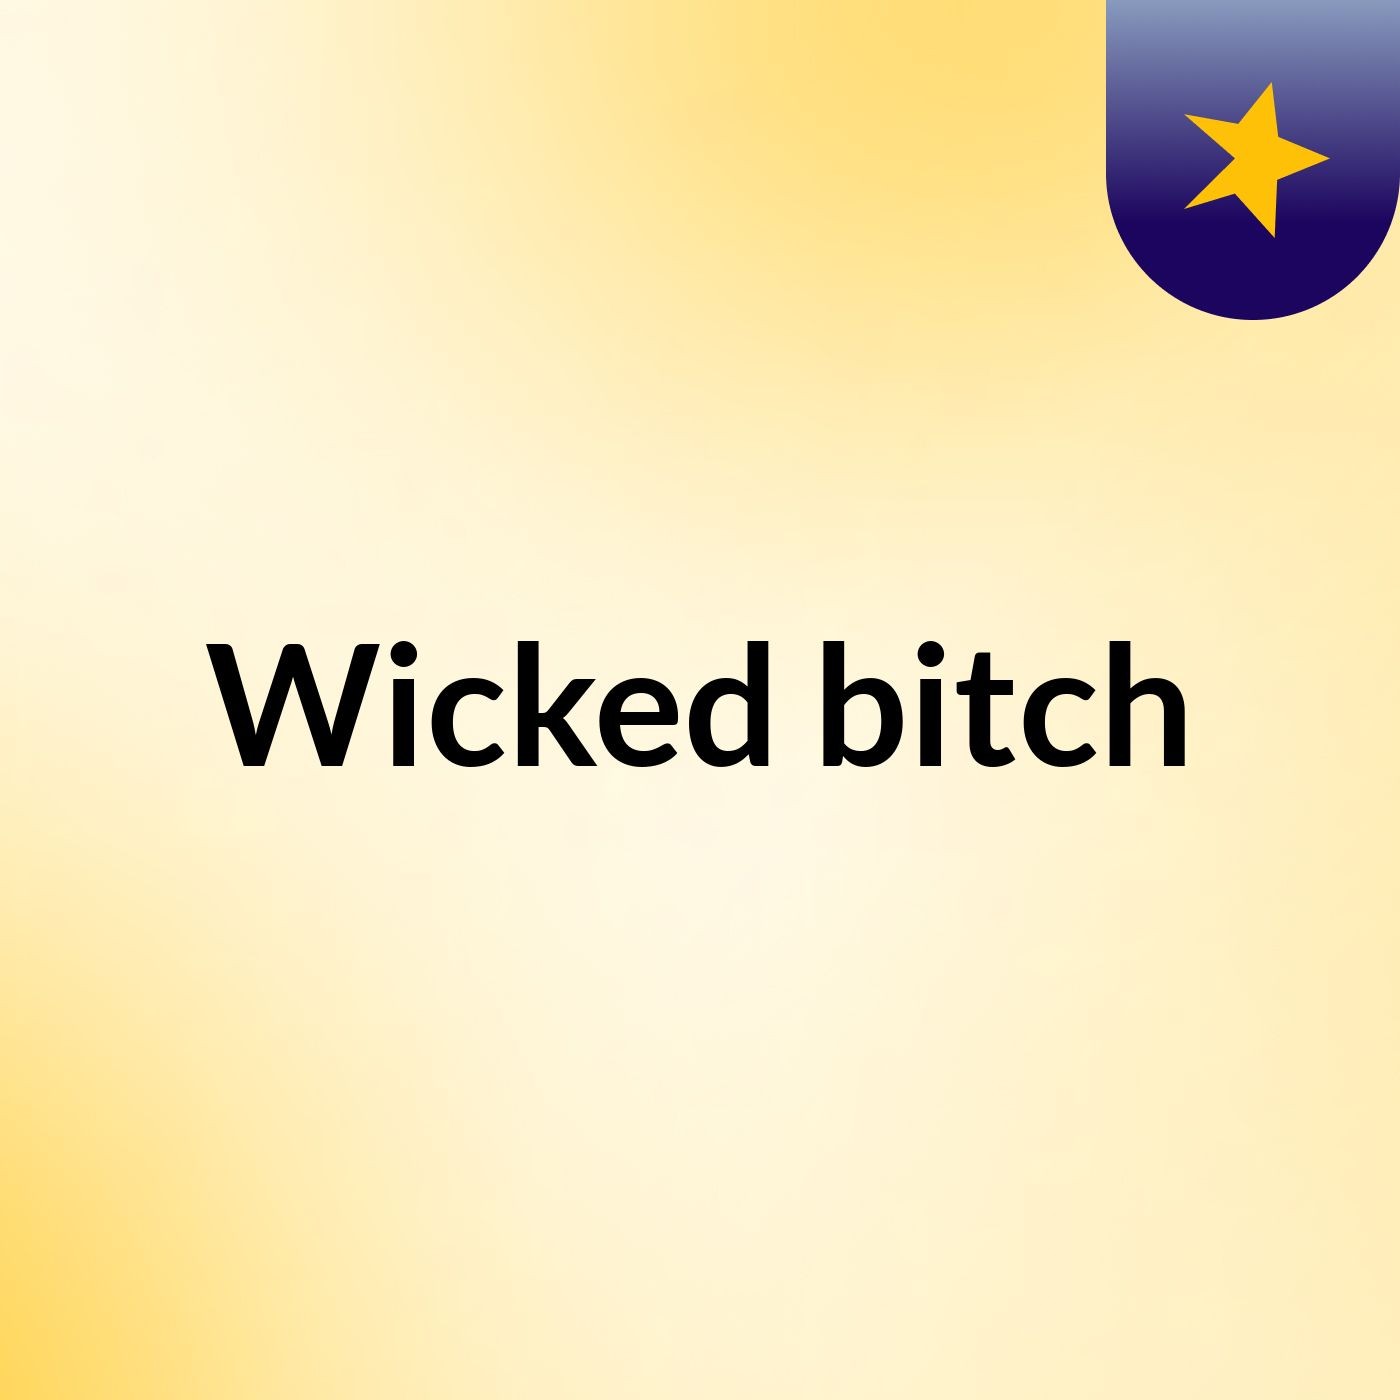 Wicked bitch